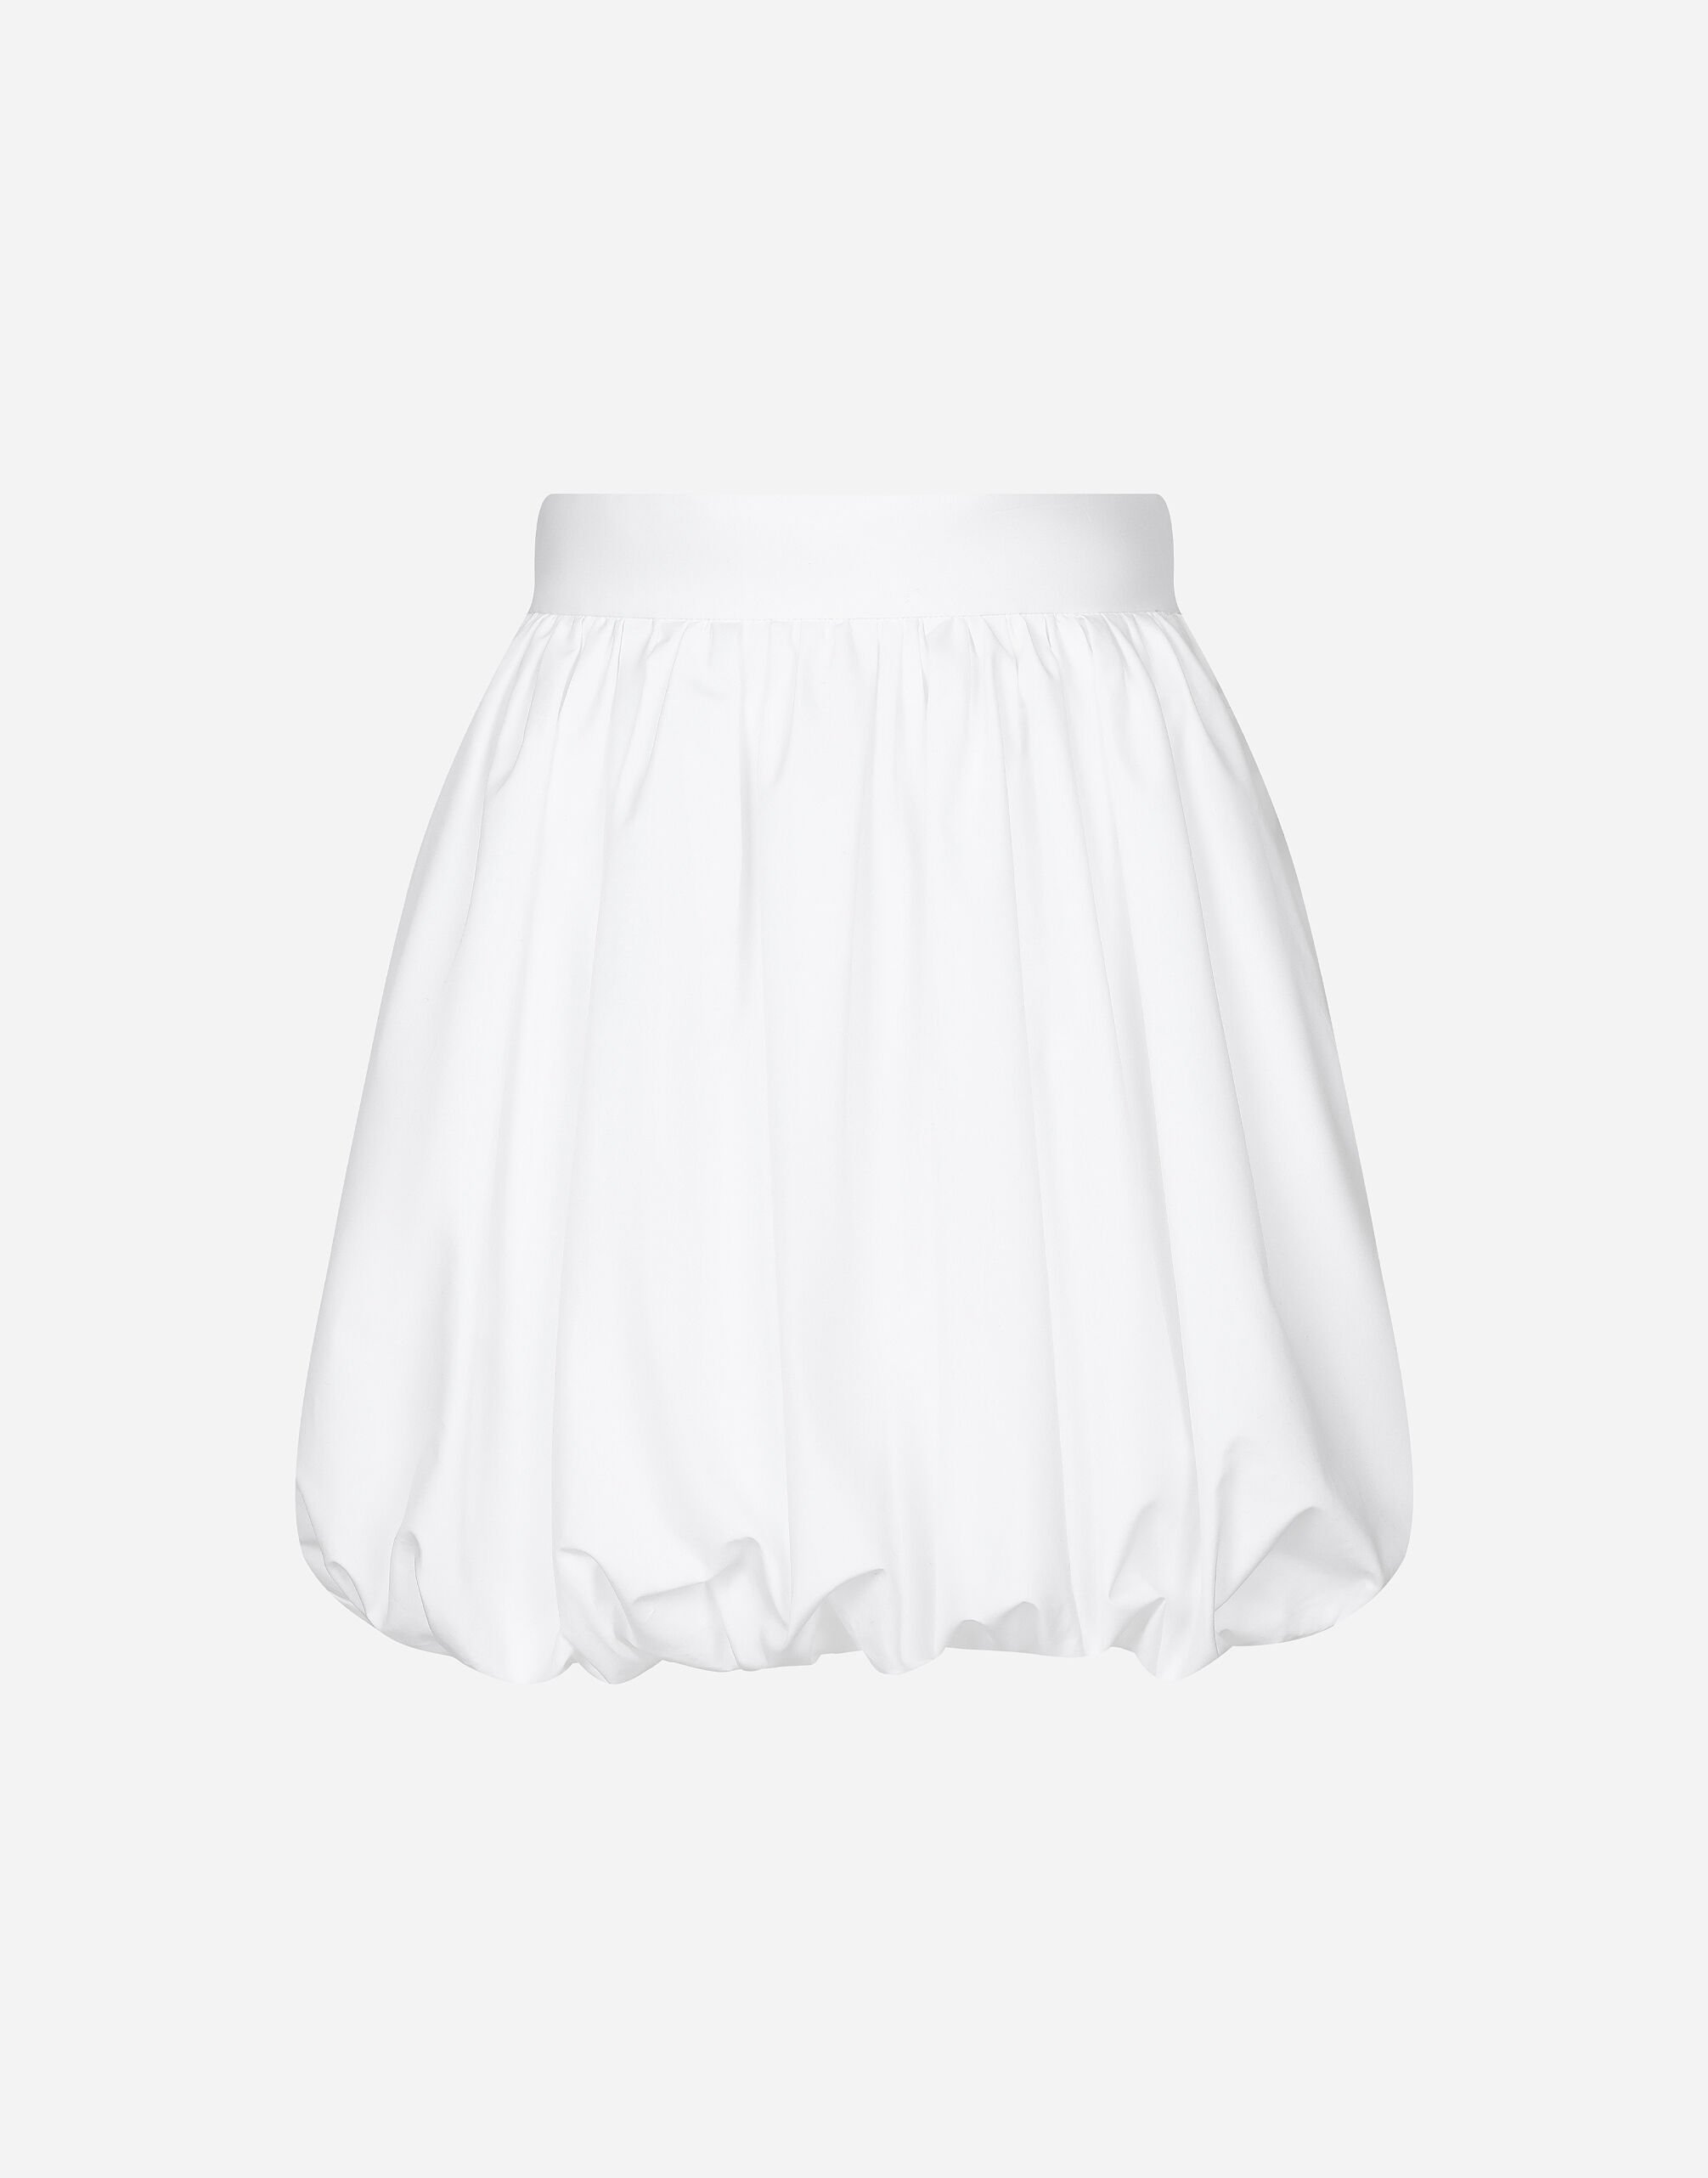 Dolce & Gabbana Short cotton balloon skirt Print F4CUNTFPTAX